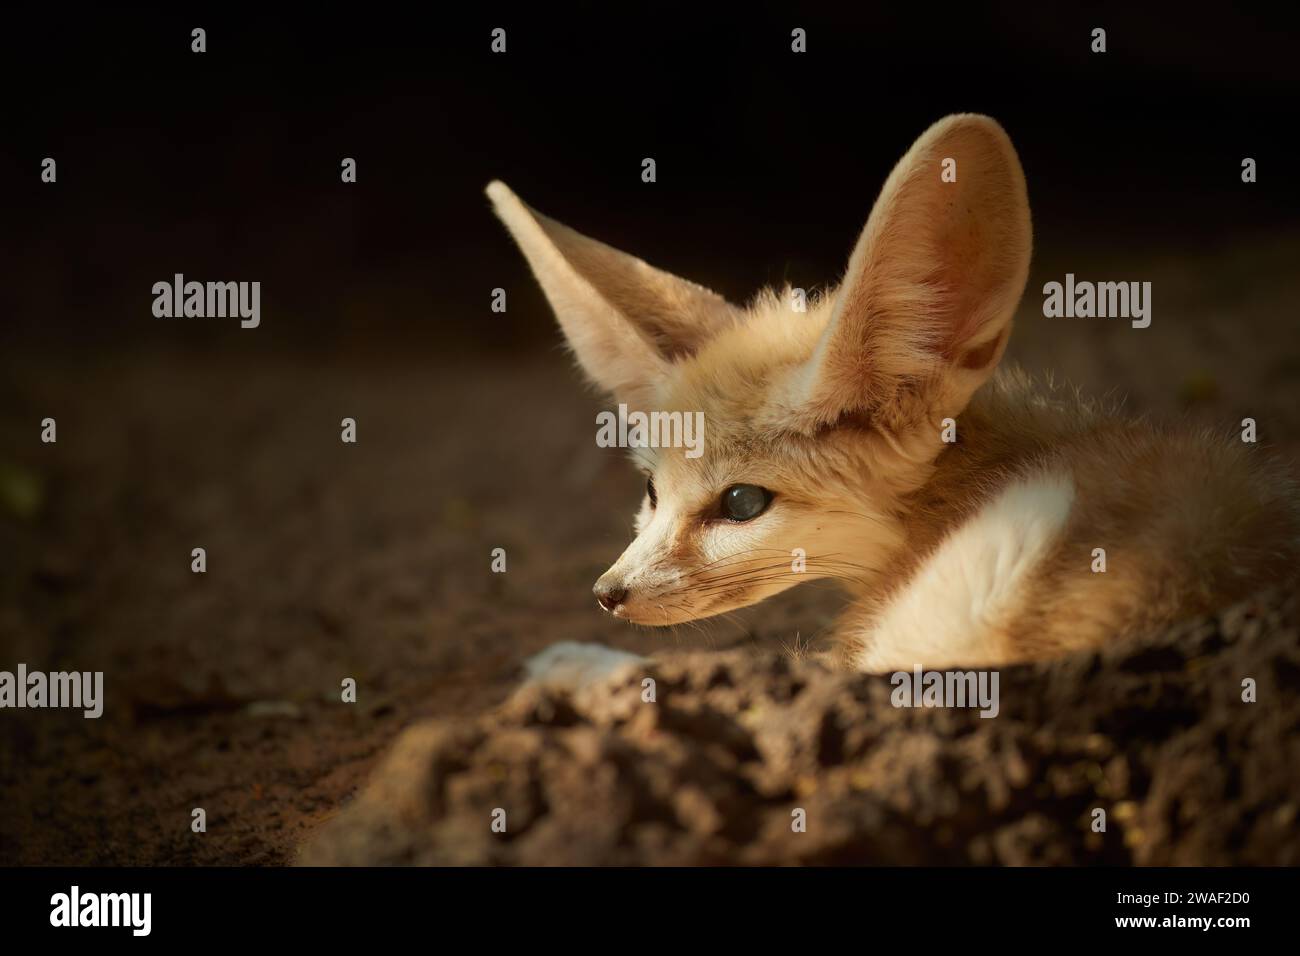 Thème de la faune de l'Afrique du Nord : le renard Fennec, Vulpes zerda, le plus petit renard originaire des déserts d'Afrique du Nord. Contact direct avec les yeux, grandes oreilles, rocheux Banque D'Images